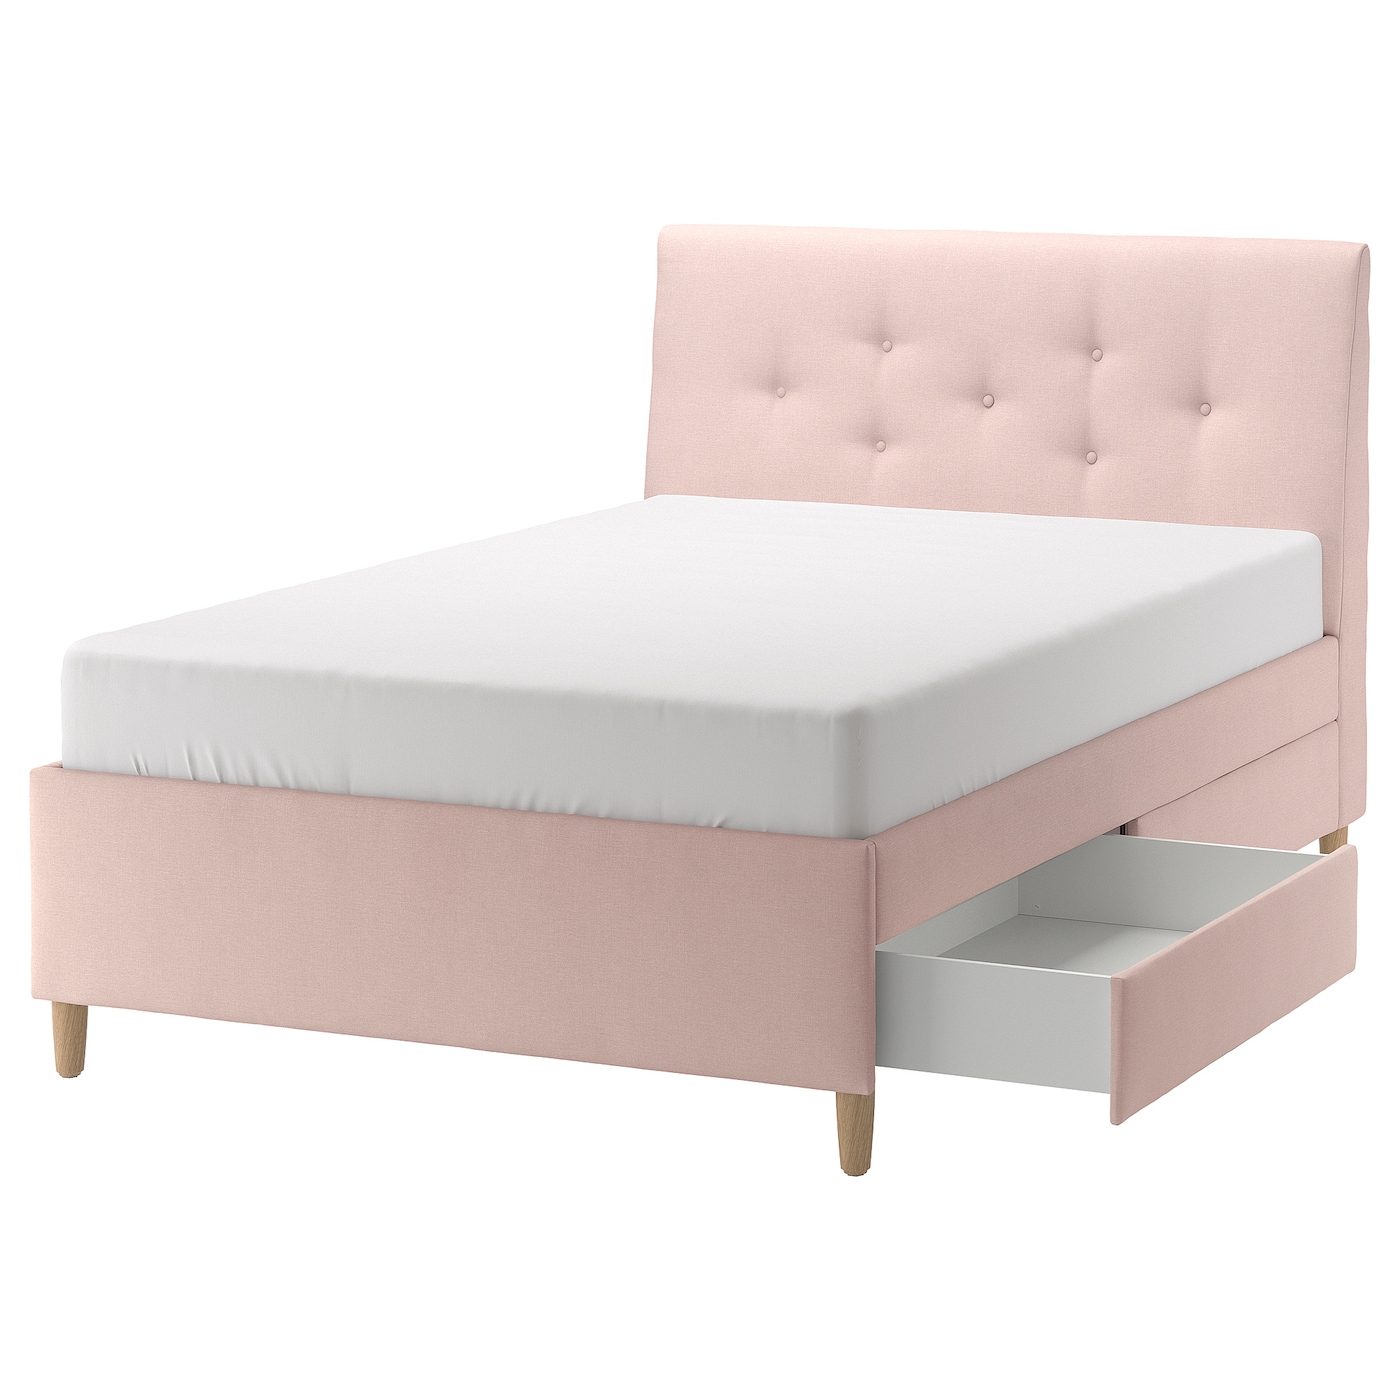 Кровать мягкая с ящиками - IKEA IDANÄS/IDANAS, 200х140 см, бледно розовая, ИДАНЭС ИКЕА